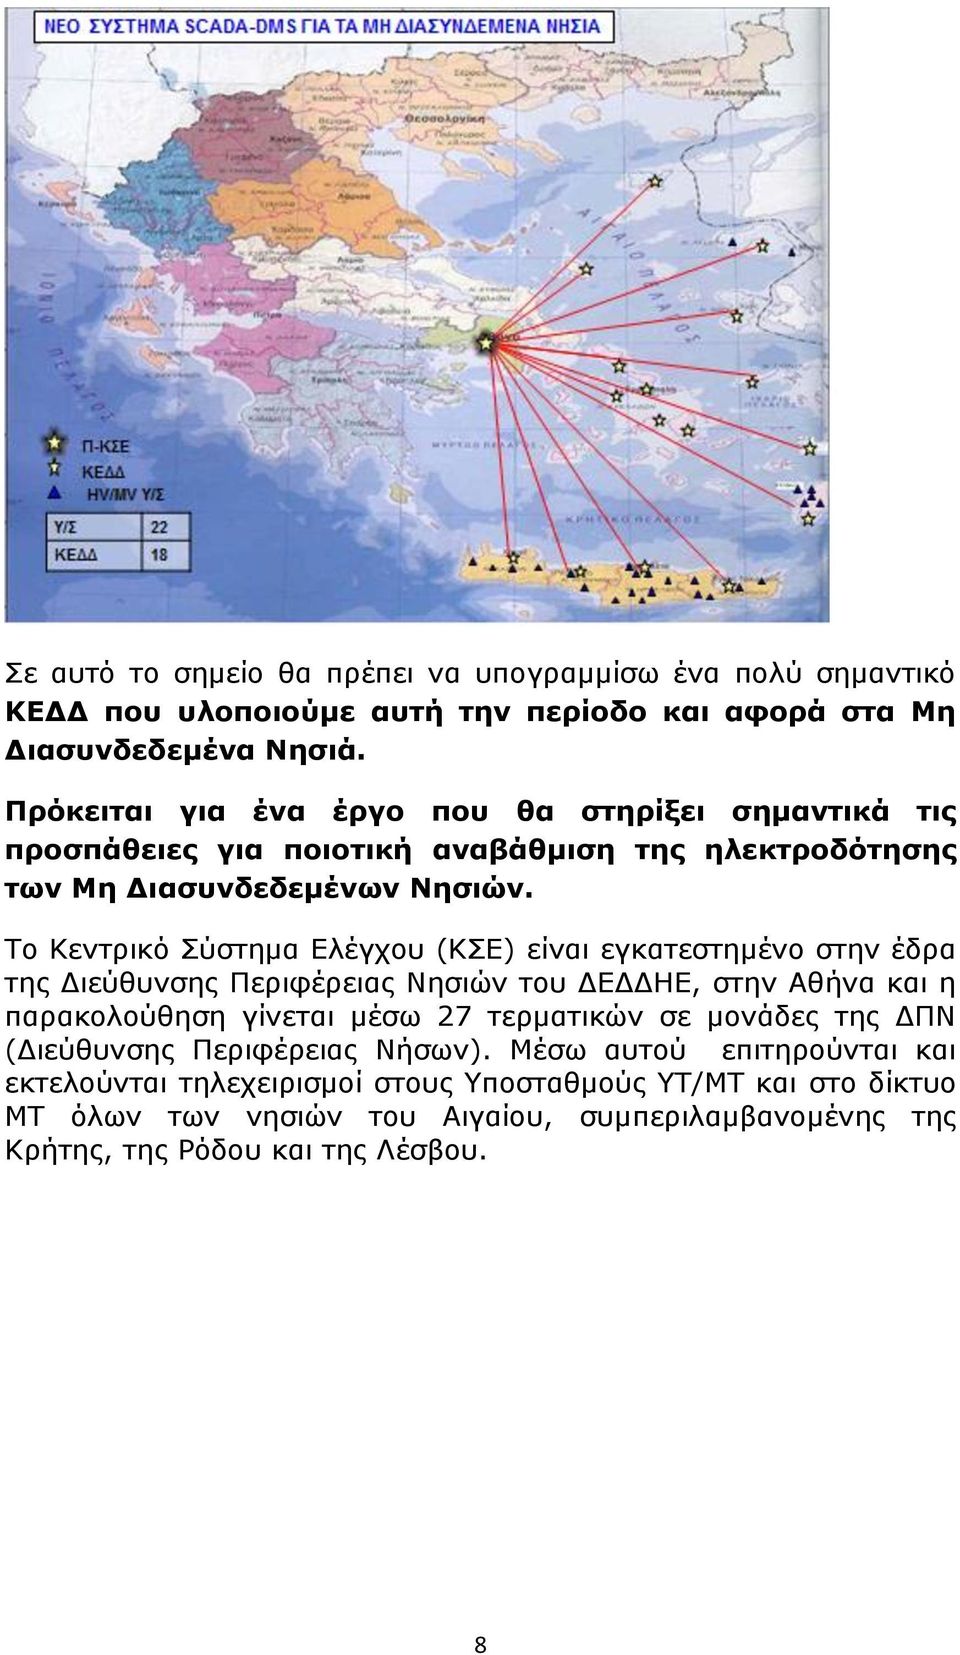 Το Κεντρικό Σύστημα Ελέγχου (ΚΣΕ) είναι εγκατεστημένο στην έδρα της Διεύθυνσης Περιφέρειας Νησιών του ΔΕΔΔΗΕ, στην Αθήνα και η παρακολούθηση γίνεται μέσω 27 τερματικών